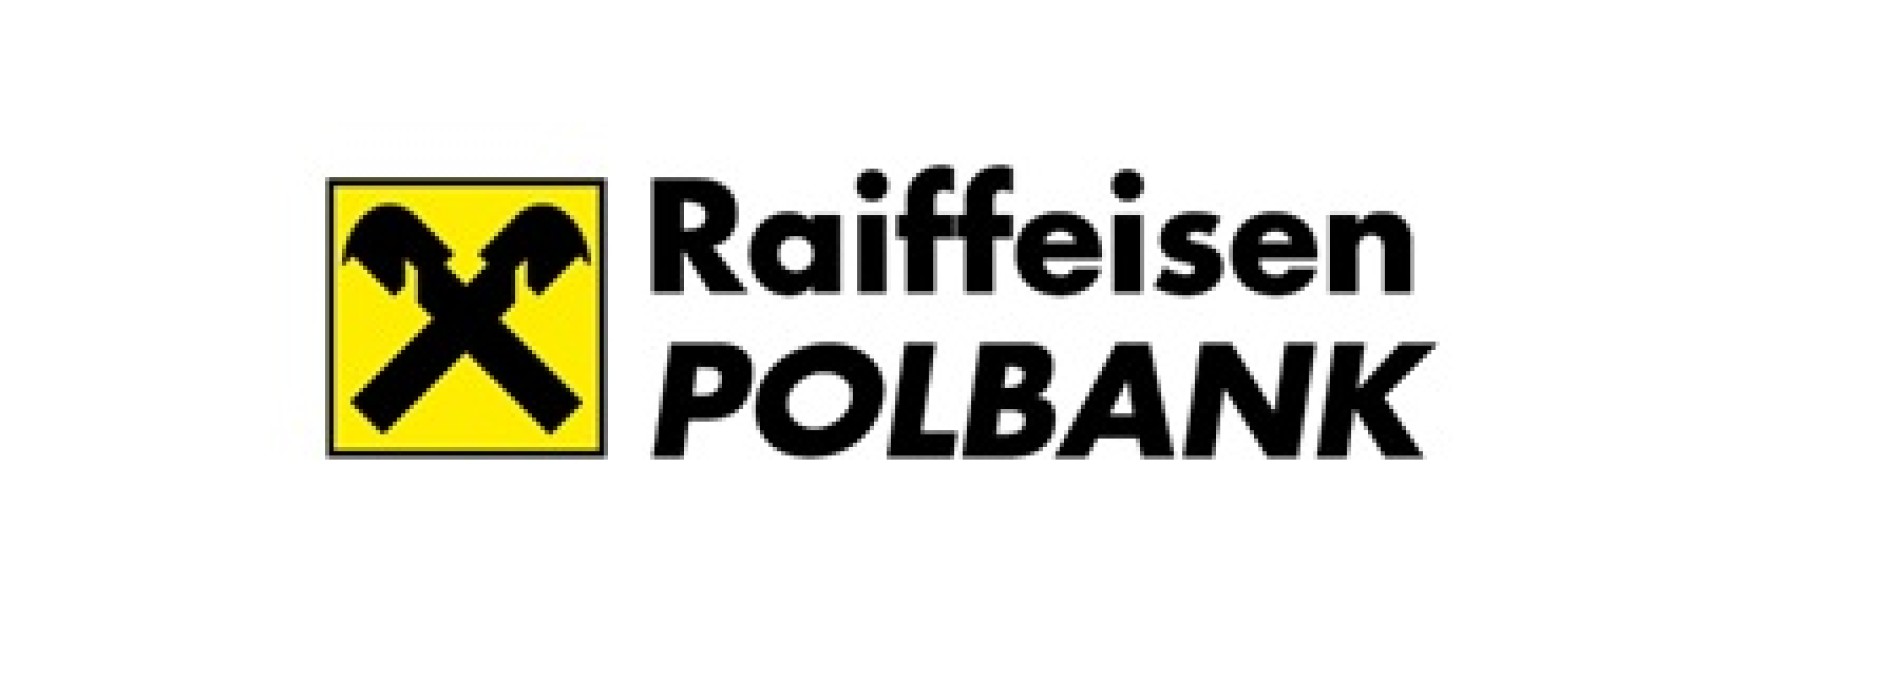 Raiffeisen Polbank zastosuje ujemną stawkę referencyjną dla kredytów w CHF